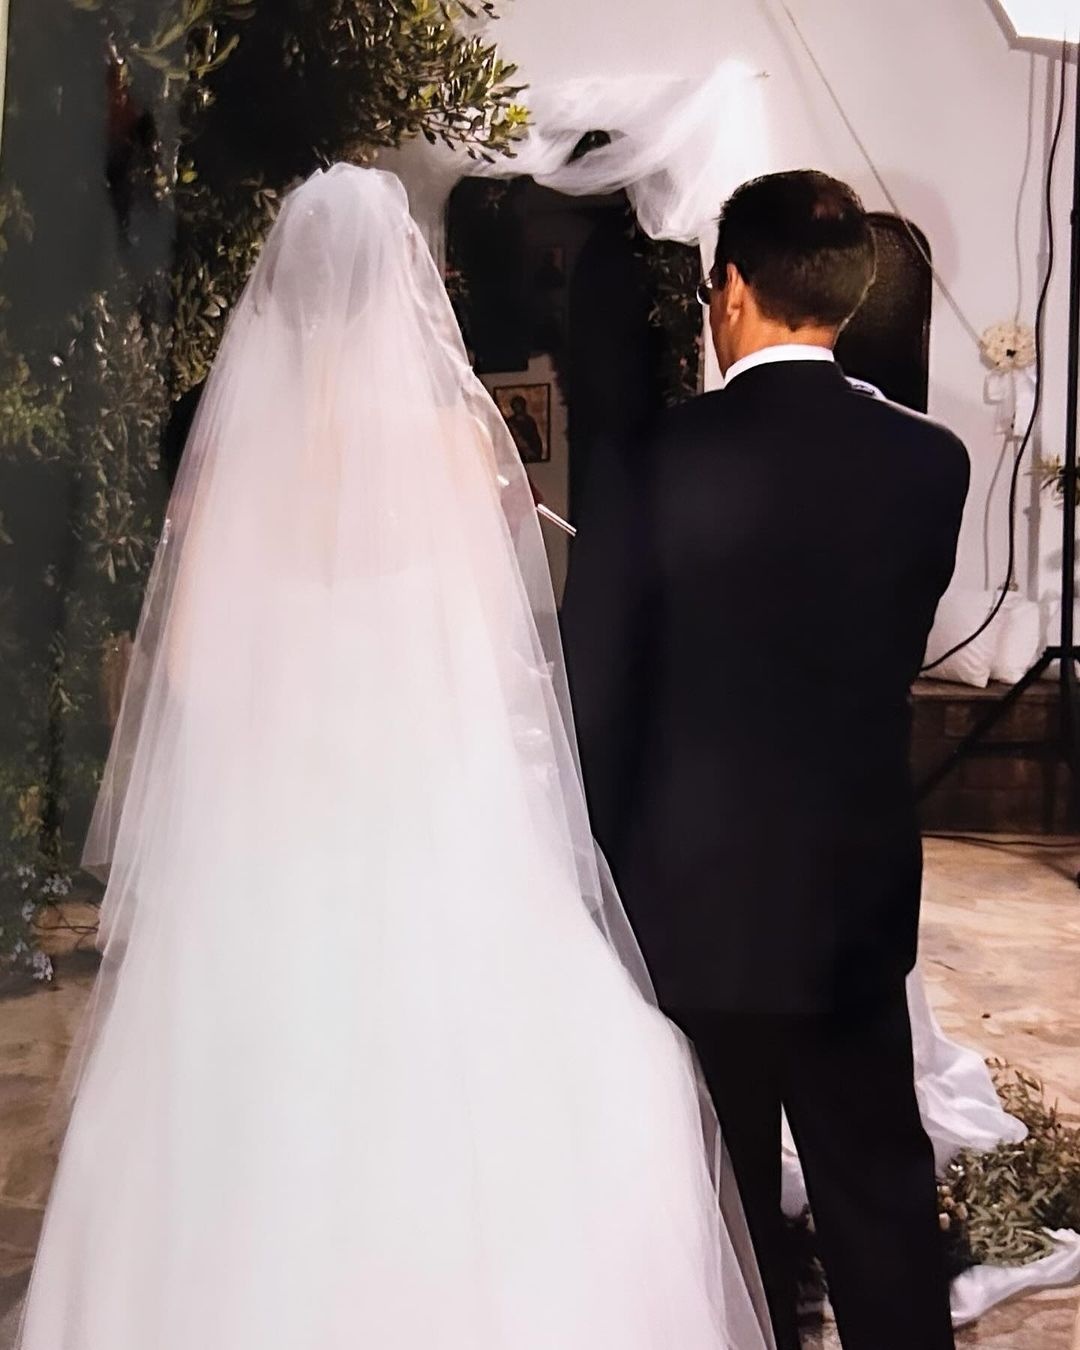 Φαίη Μαυραγάνη: Ευχήθηκε στον σύζυγό της, Νίκο Μάνεση, με μια φωτογραφία από τον γάμο τους